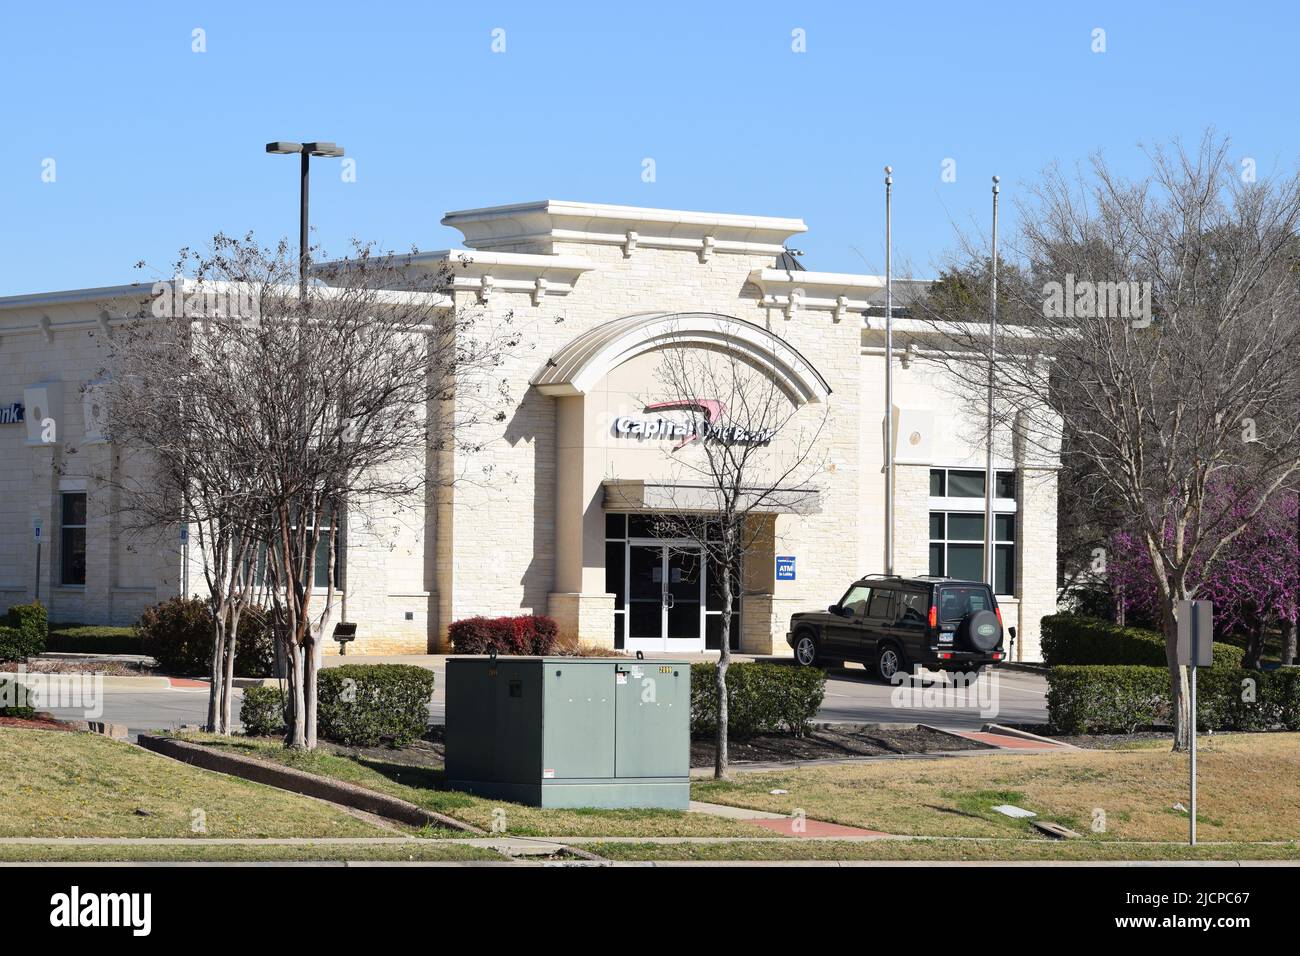 Un vus Land Rover Discovery stationné devant un bâtiment Capital One Bank à Irving, Texas Banque D'Images